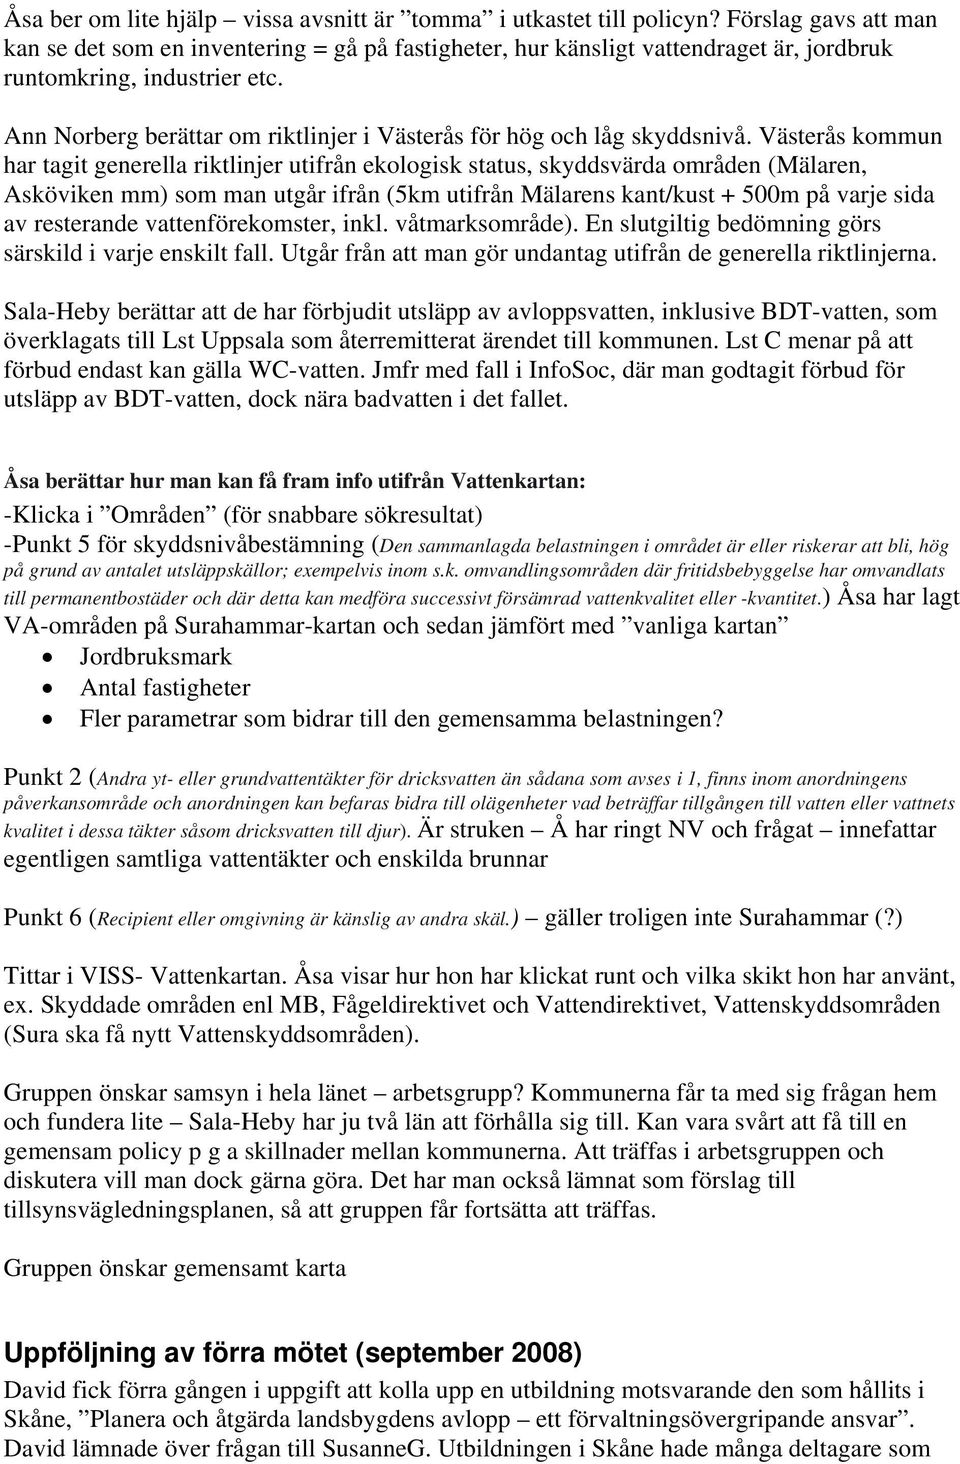 Ann Norberg berättar om riktlinjer i Västerås för hög och låg skyddsnivå.